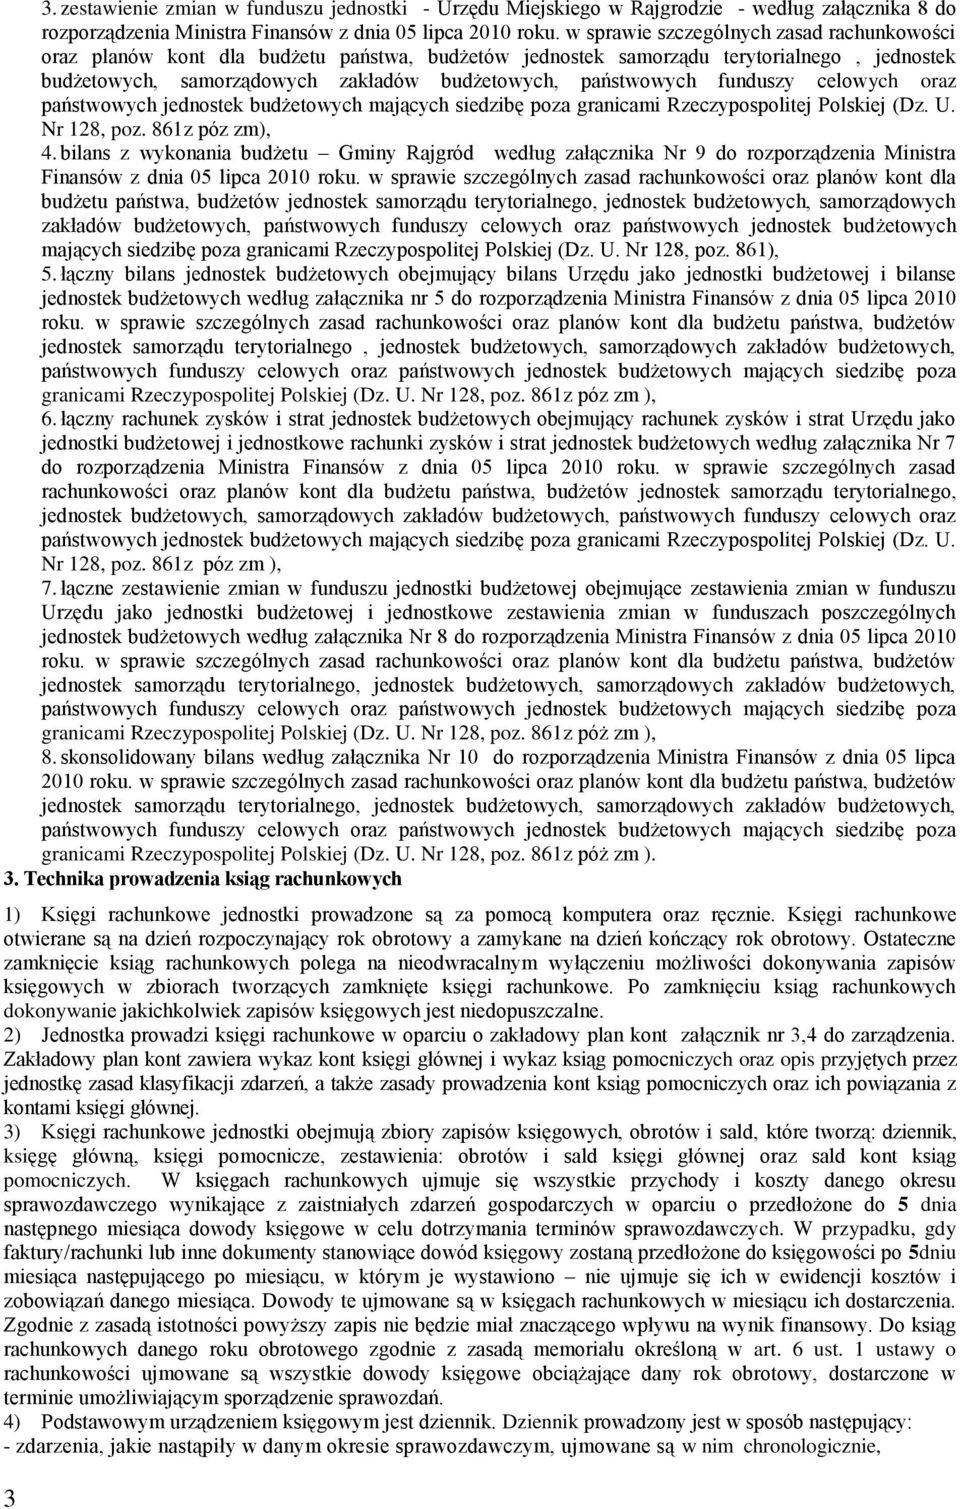 funduszy celowych oraz państwowych jednostek budżetowych mających siedzibę poza granicami Rzeczypospolitej Polskiej (Dz. U. Nr 128, poz. 861z póz zm), 4.